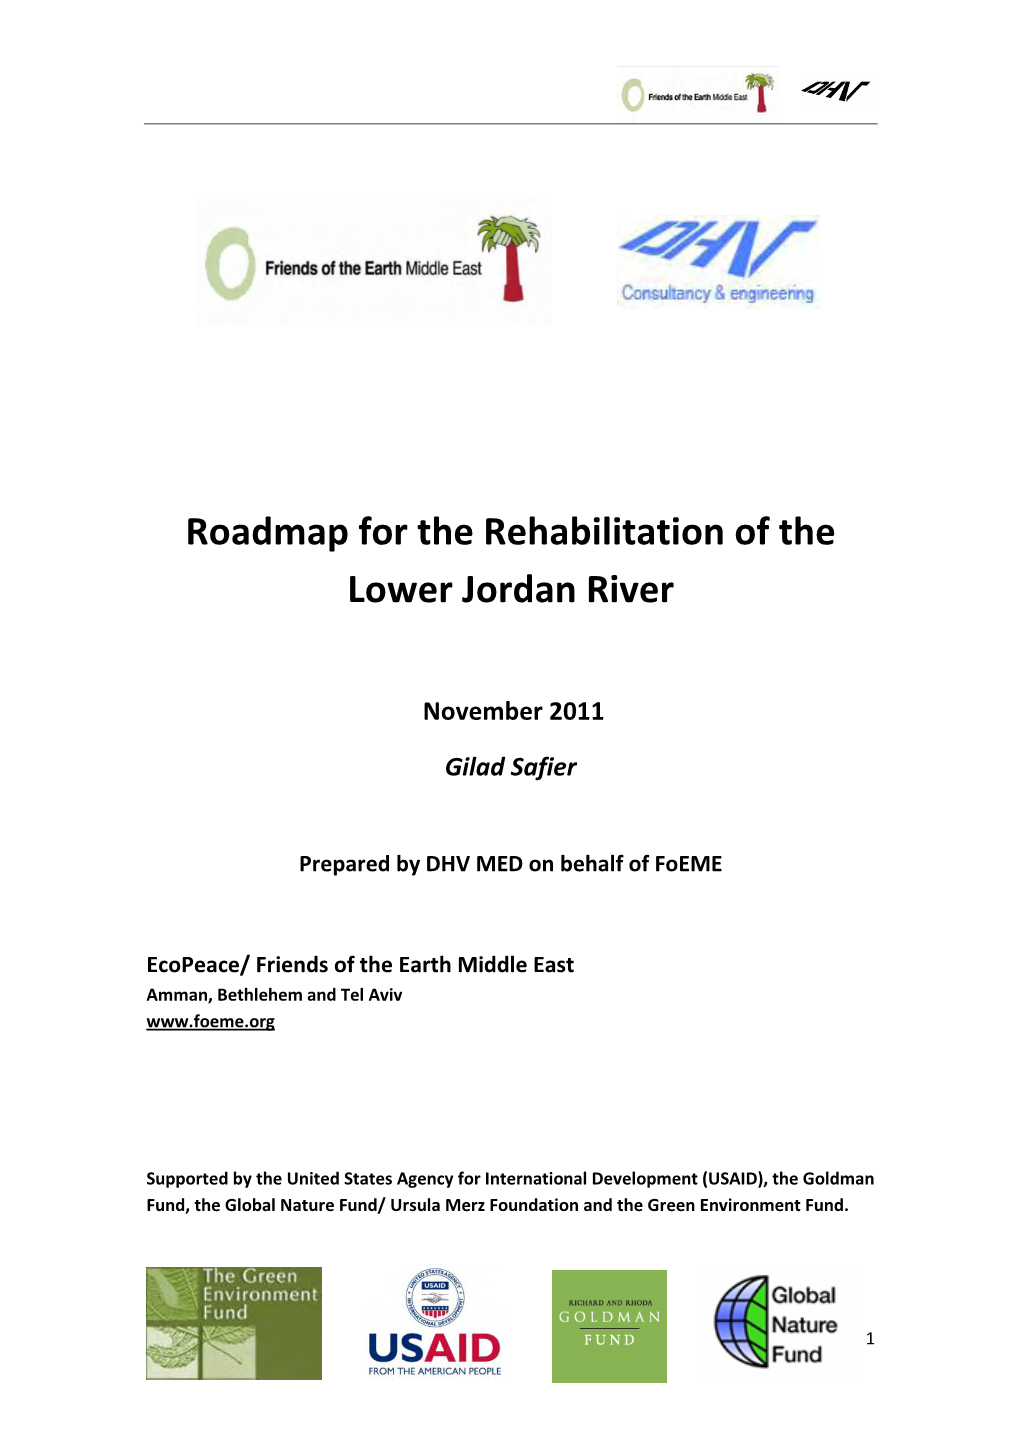 Roadmap for the Rehabilitation of the Lower Jordan River